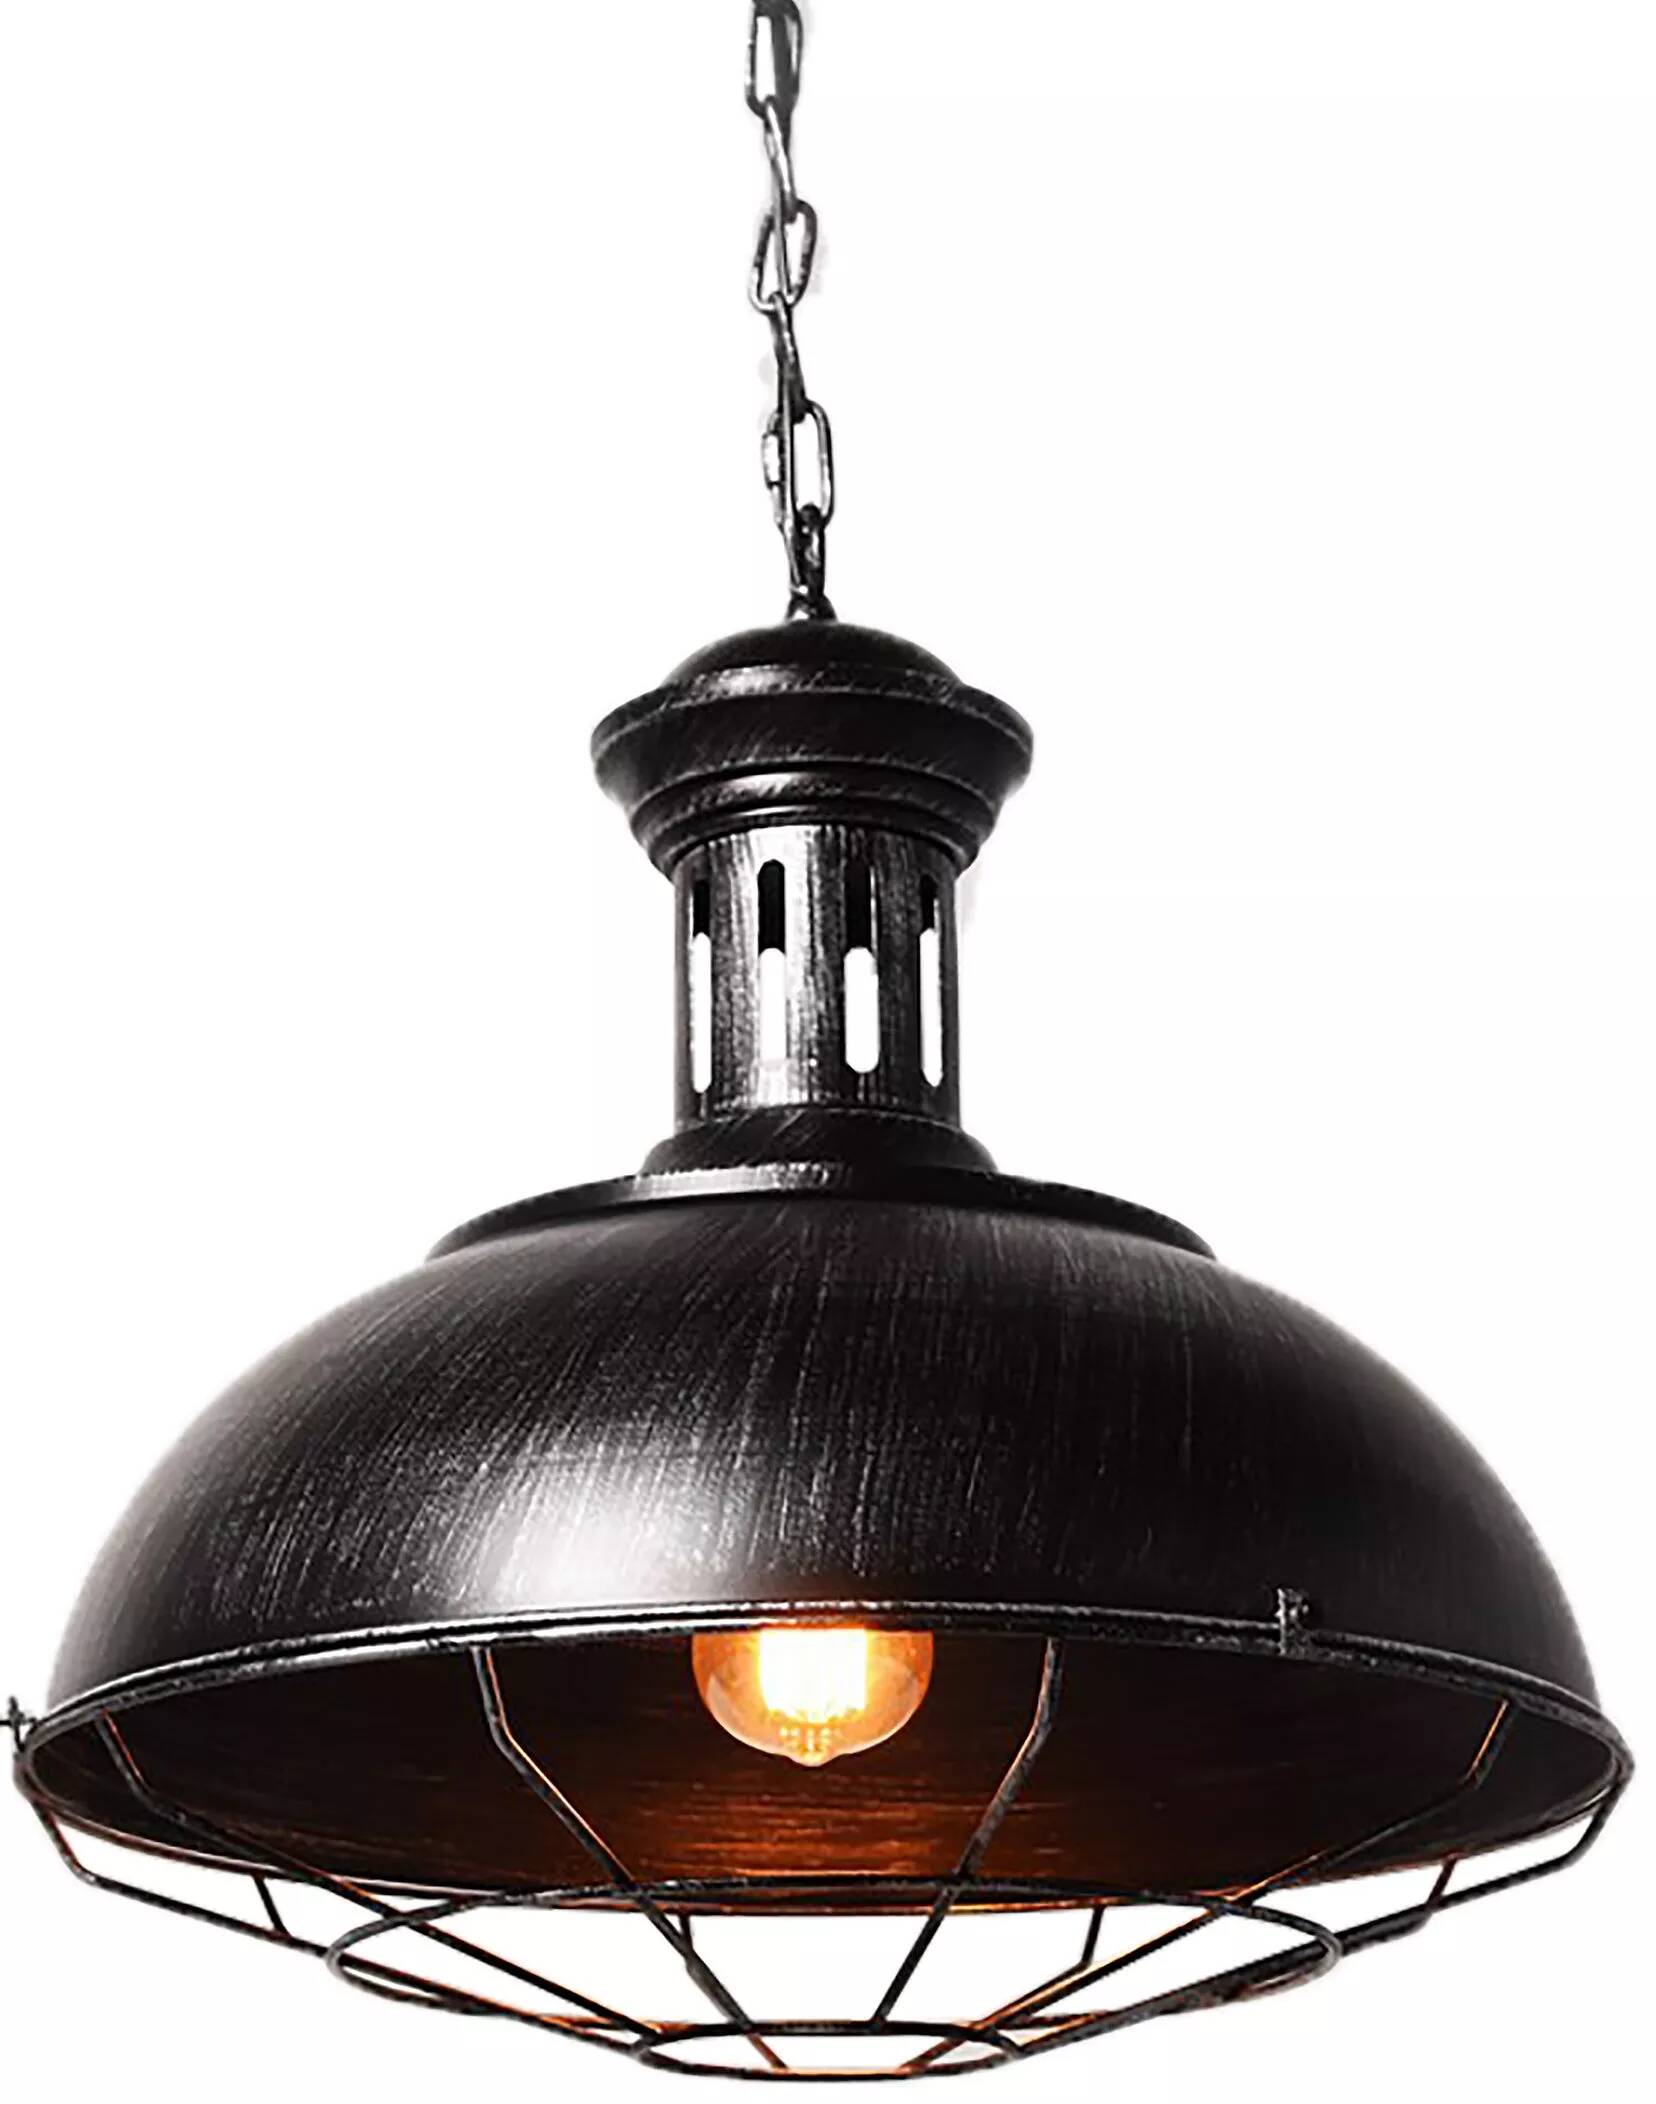 Lampe suspension en métal noir et argenté antique Ø35